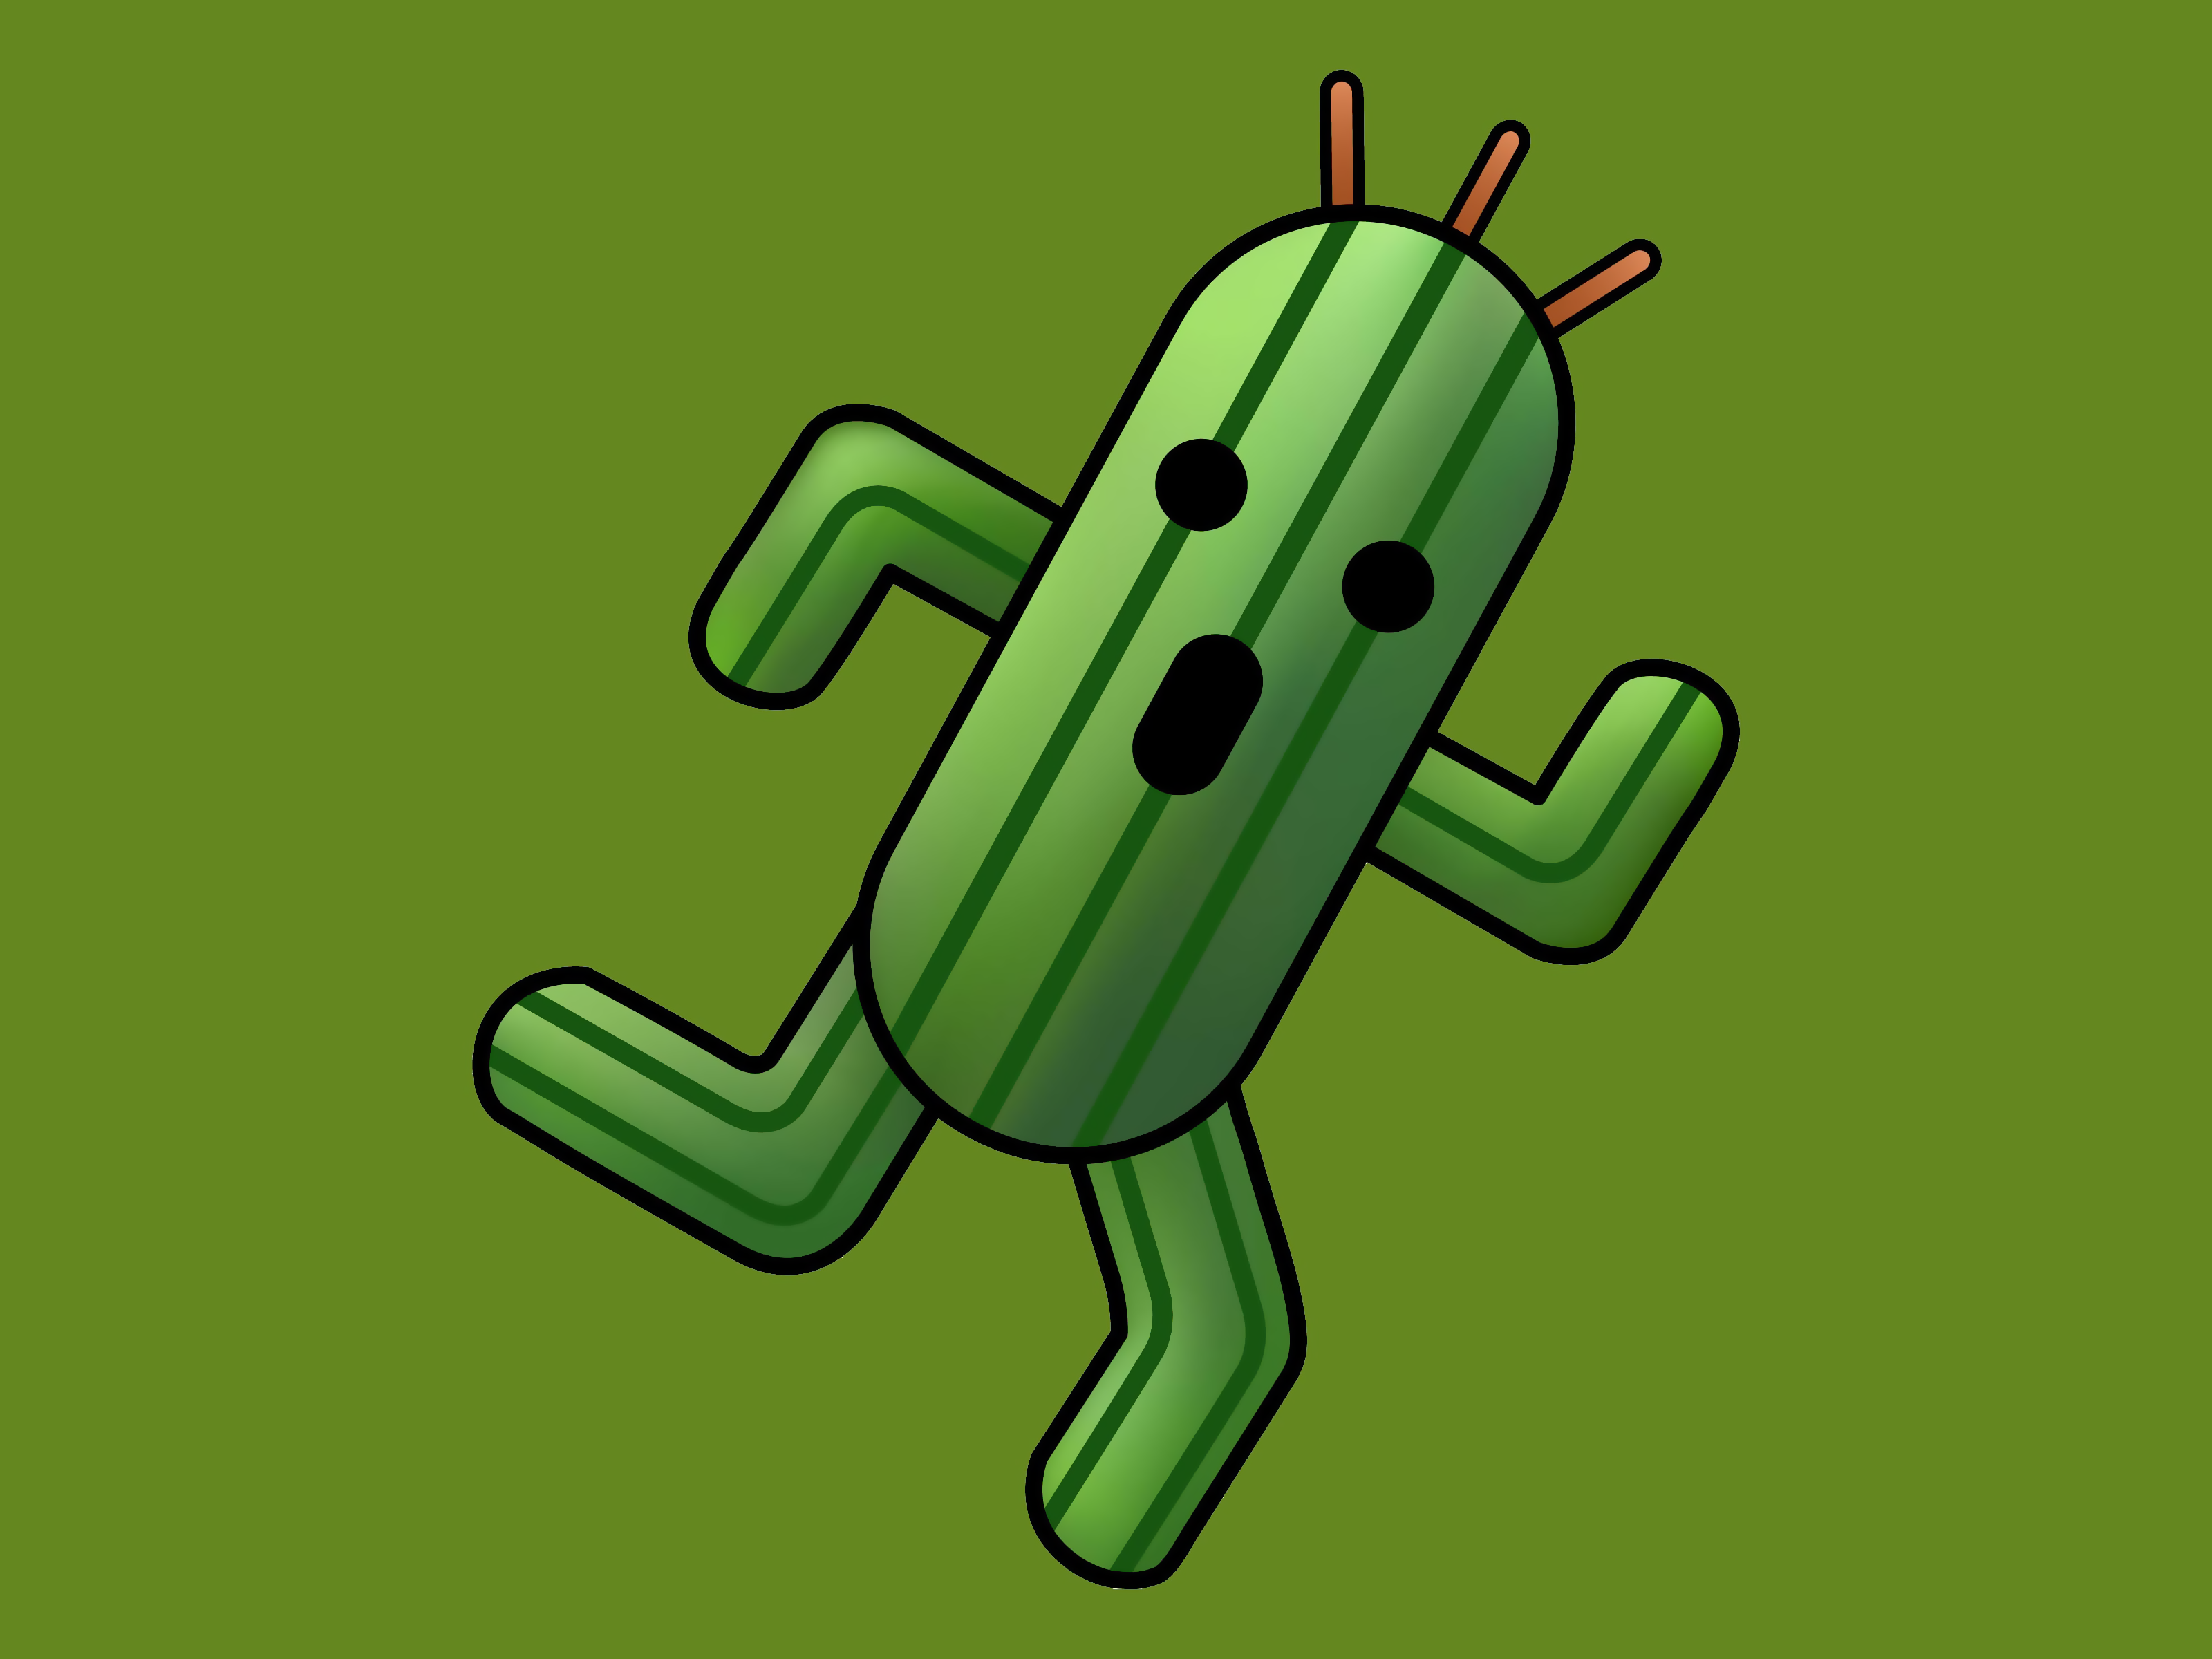 Cactus is Running Wallpaper